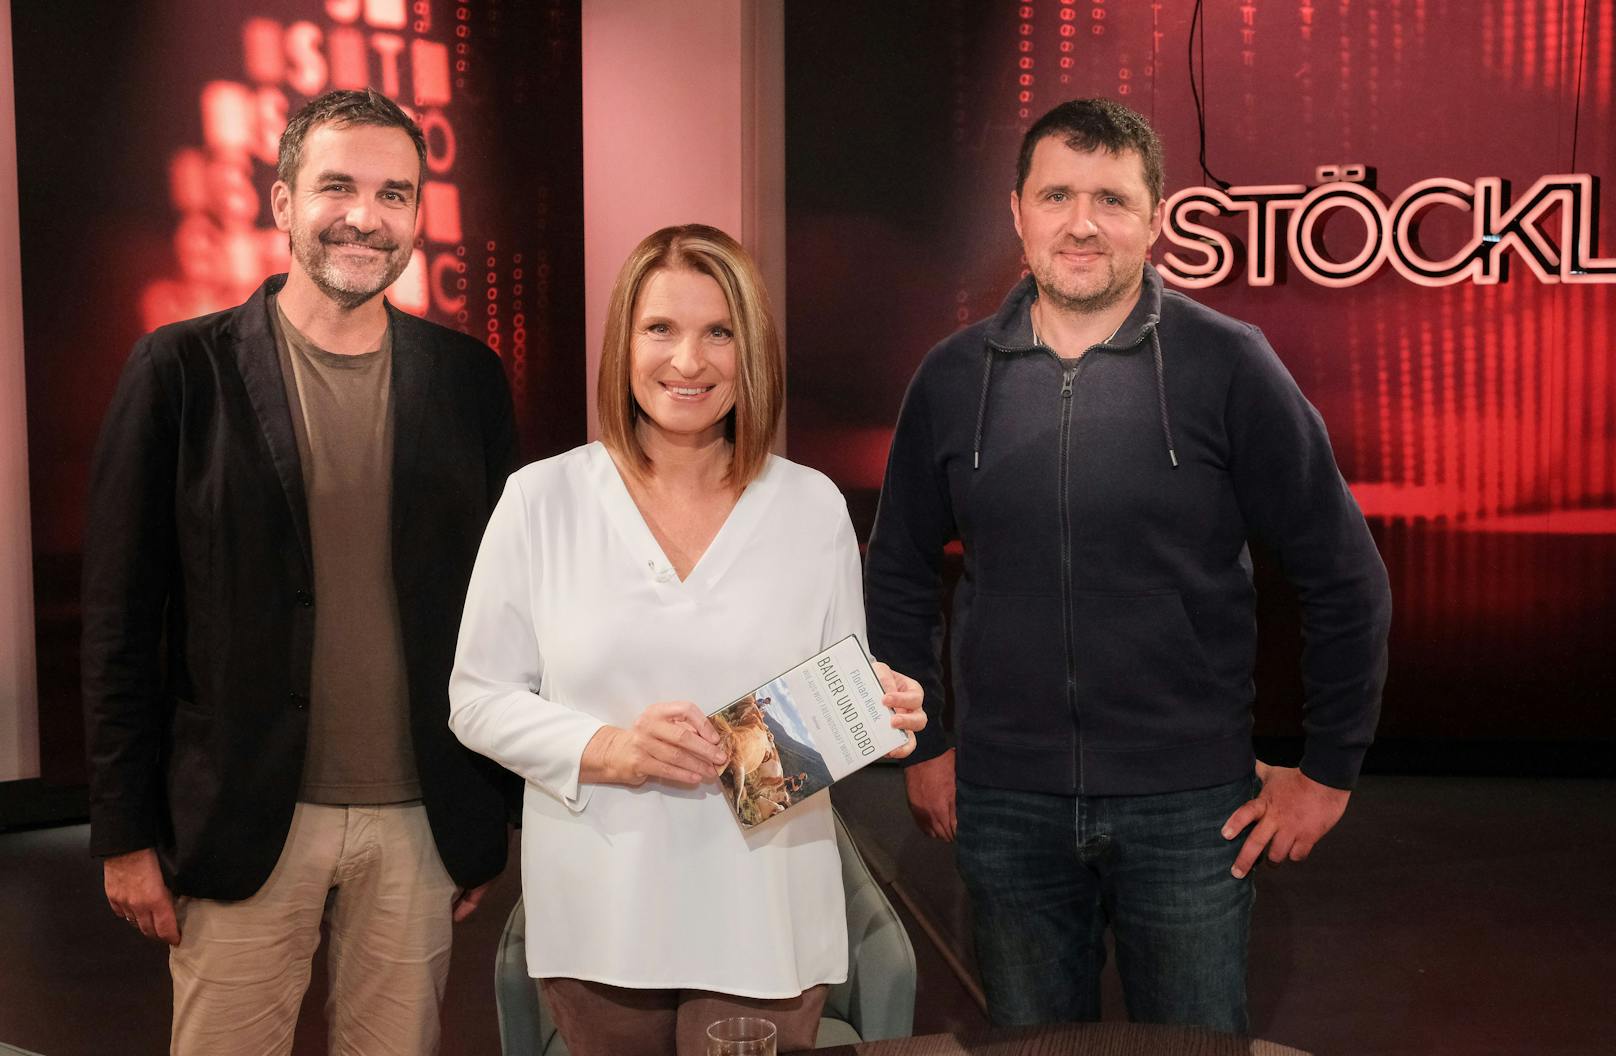 Sein Wut-Bauerntum brachte Christian Bachler auch Einladungen für die ORF-Sendung "Stöckl" ein. Im Bild mit Barbara Stöckl und Florian Klenk (l.)